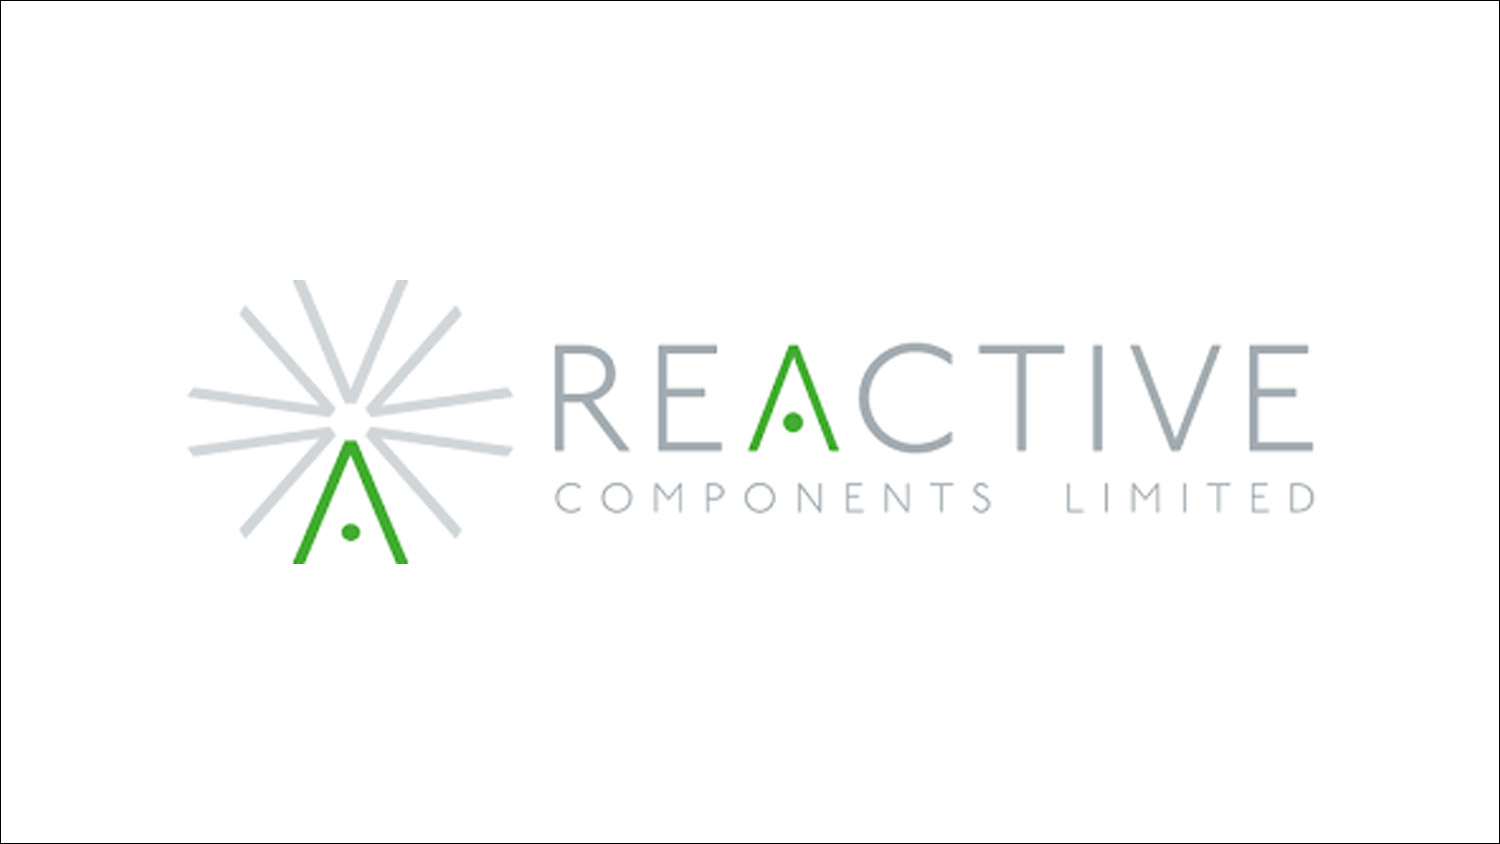 Reactive Components Ltd